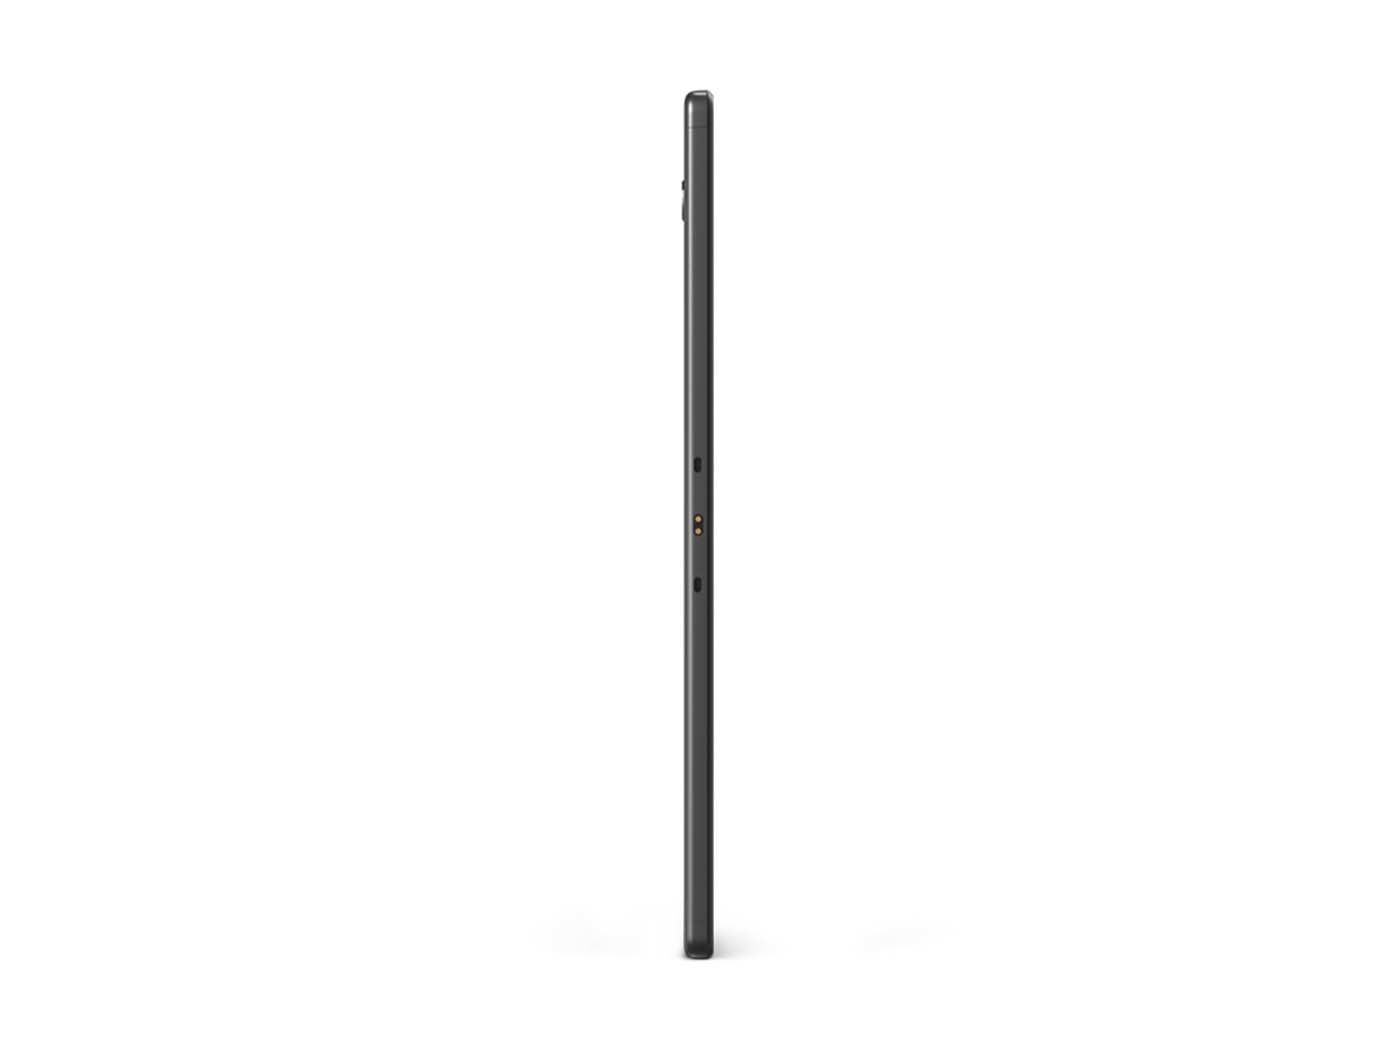 Tablet LENOVO 10" Pulgadas M10 Plus wifi color Negro